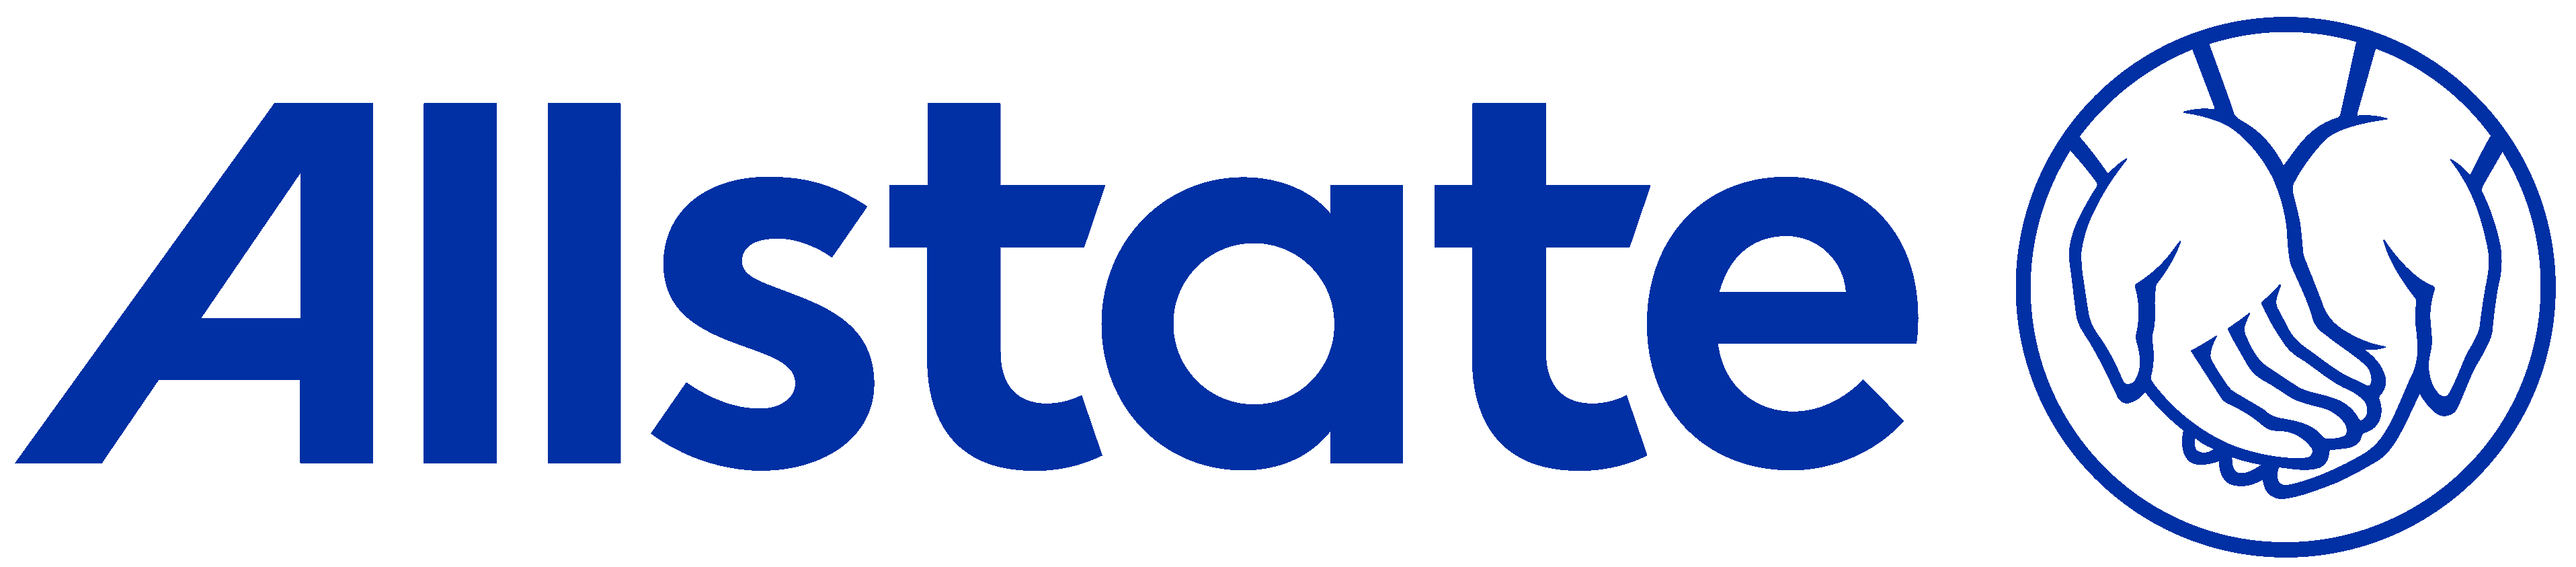 Allstate Logo